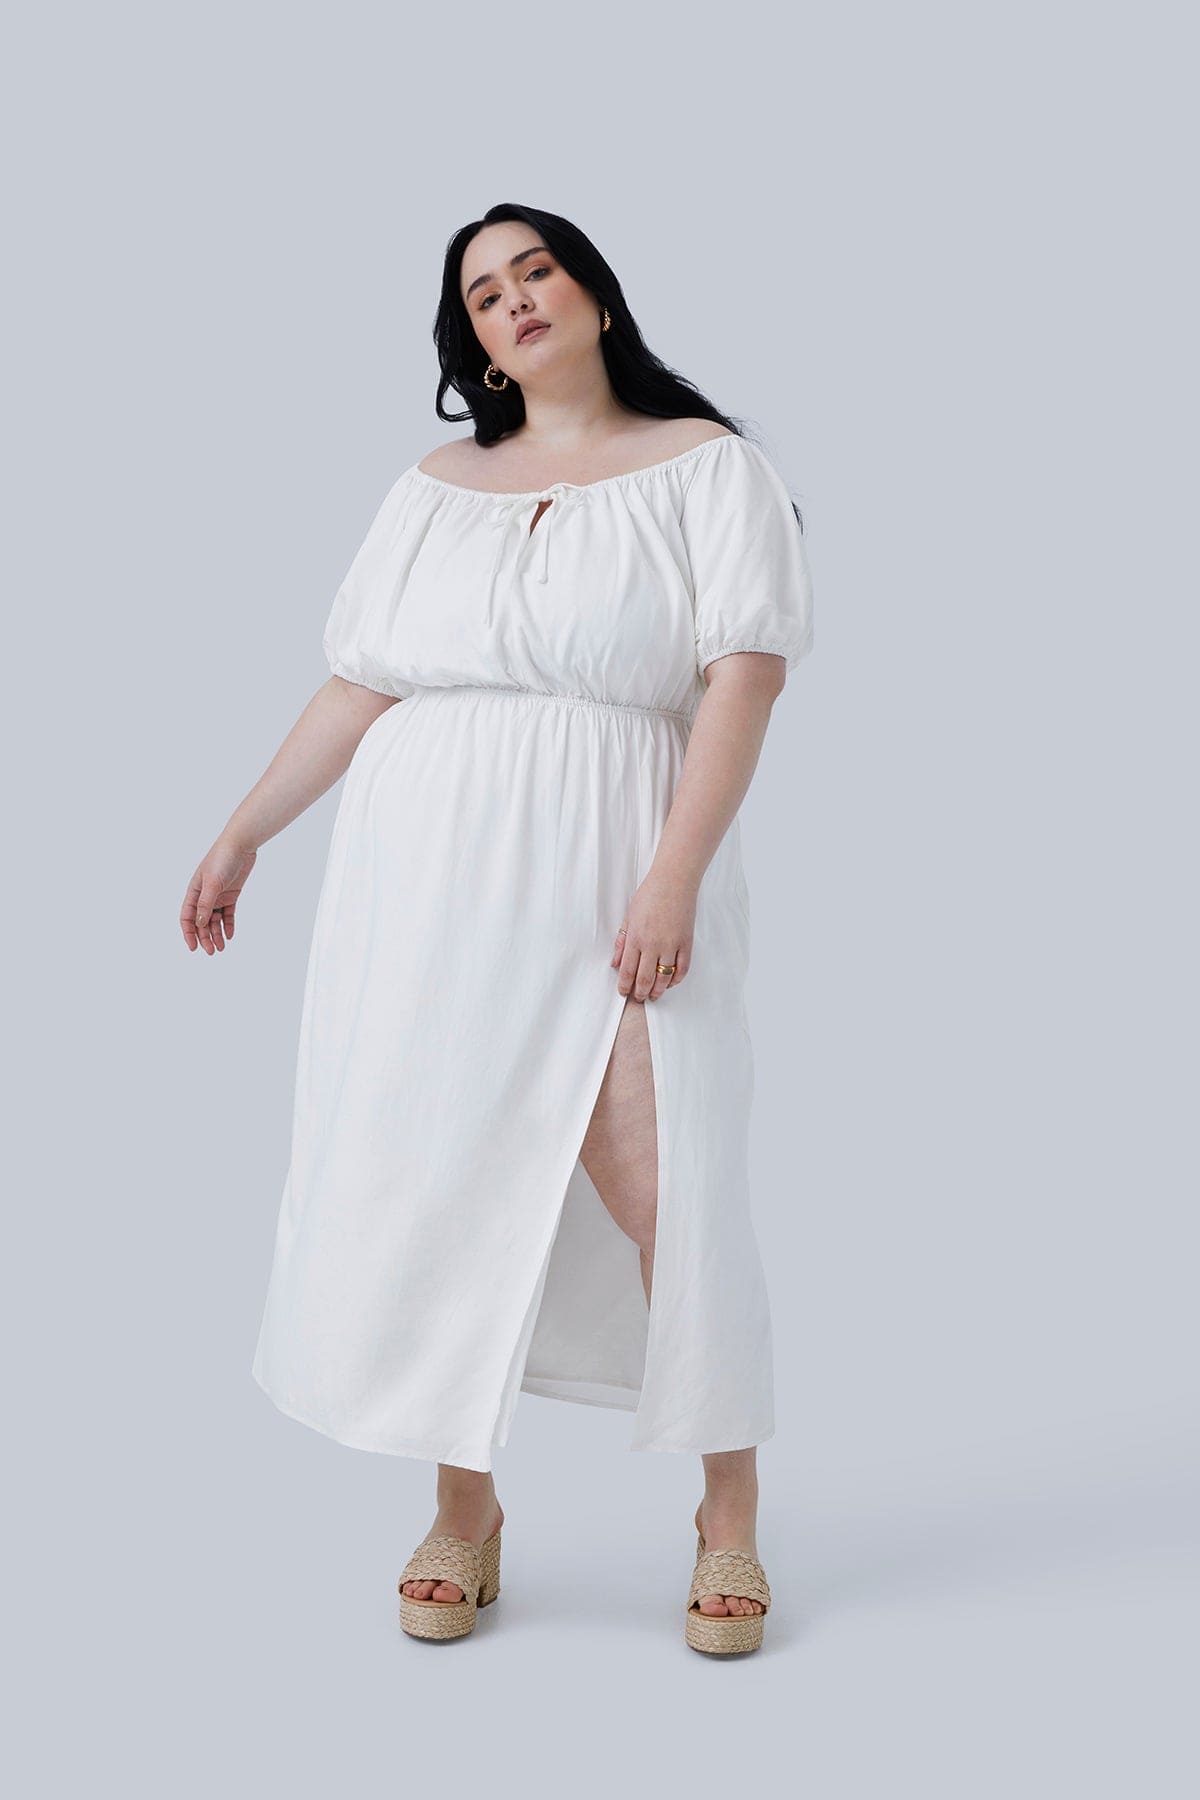 Gia Midi Dress White - Gia IRL Plus Size GIA/irl